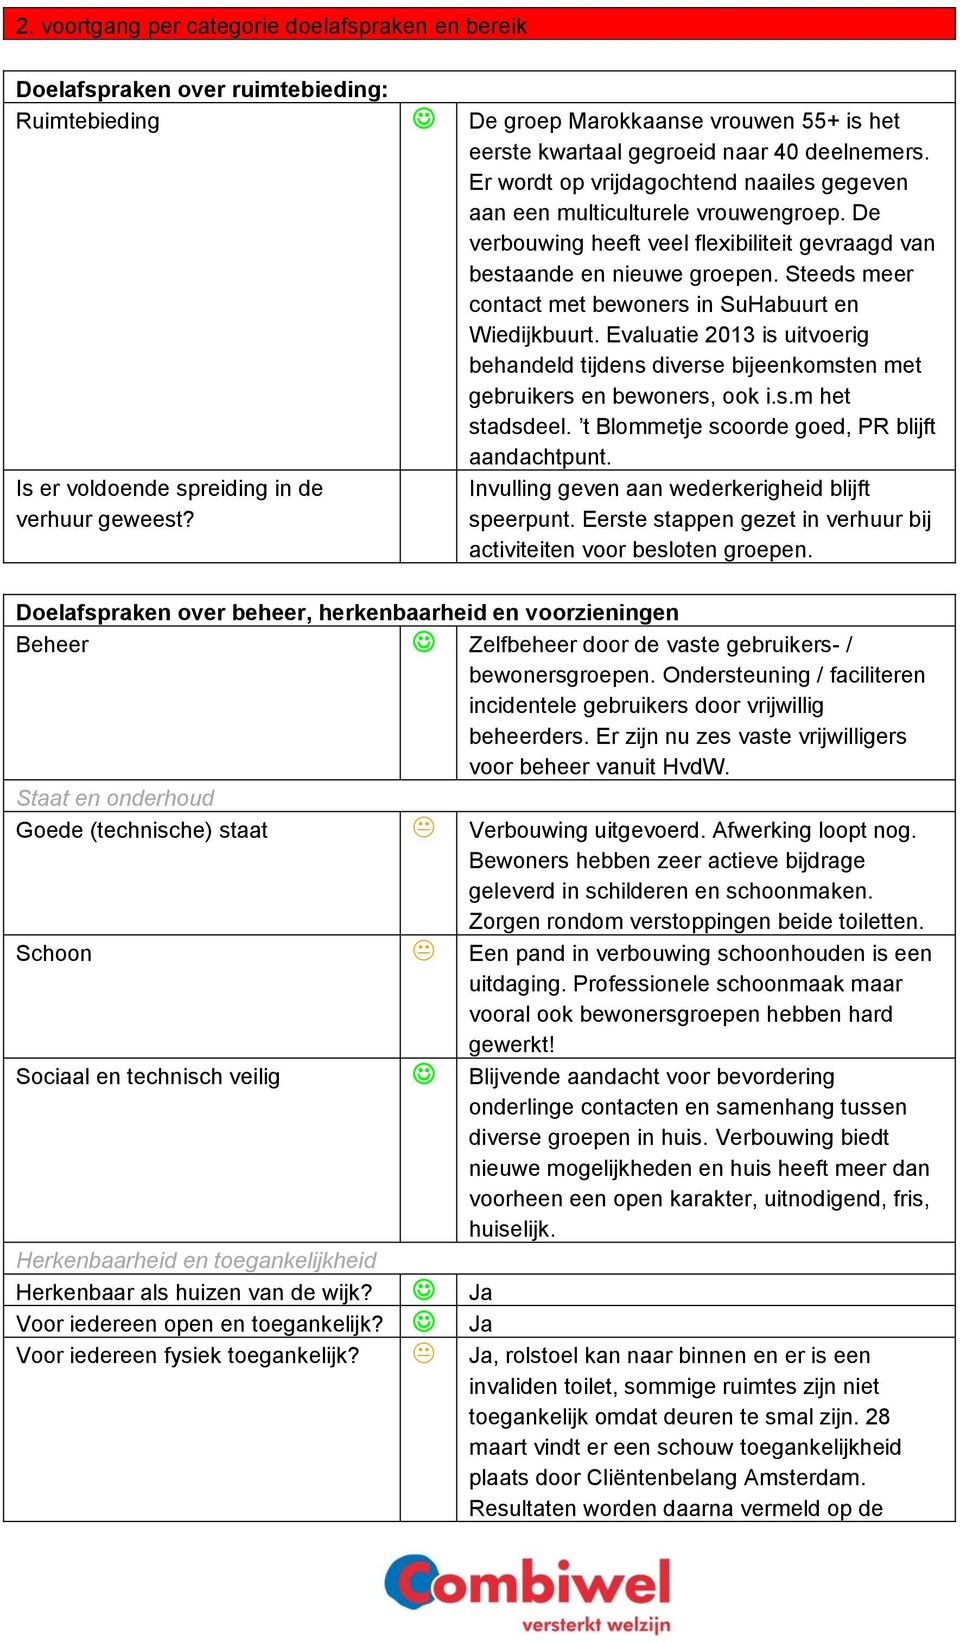 Steeds meer contact met bewoners in SuHabuurt en Wiedijkbuurt. Evaluatie 2013 is uitvoerig behandeld tijdens diverse bijeenkomsten met gebruikers en bewoners, ook i.s.m het stadsdeel.